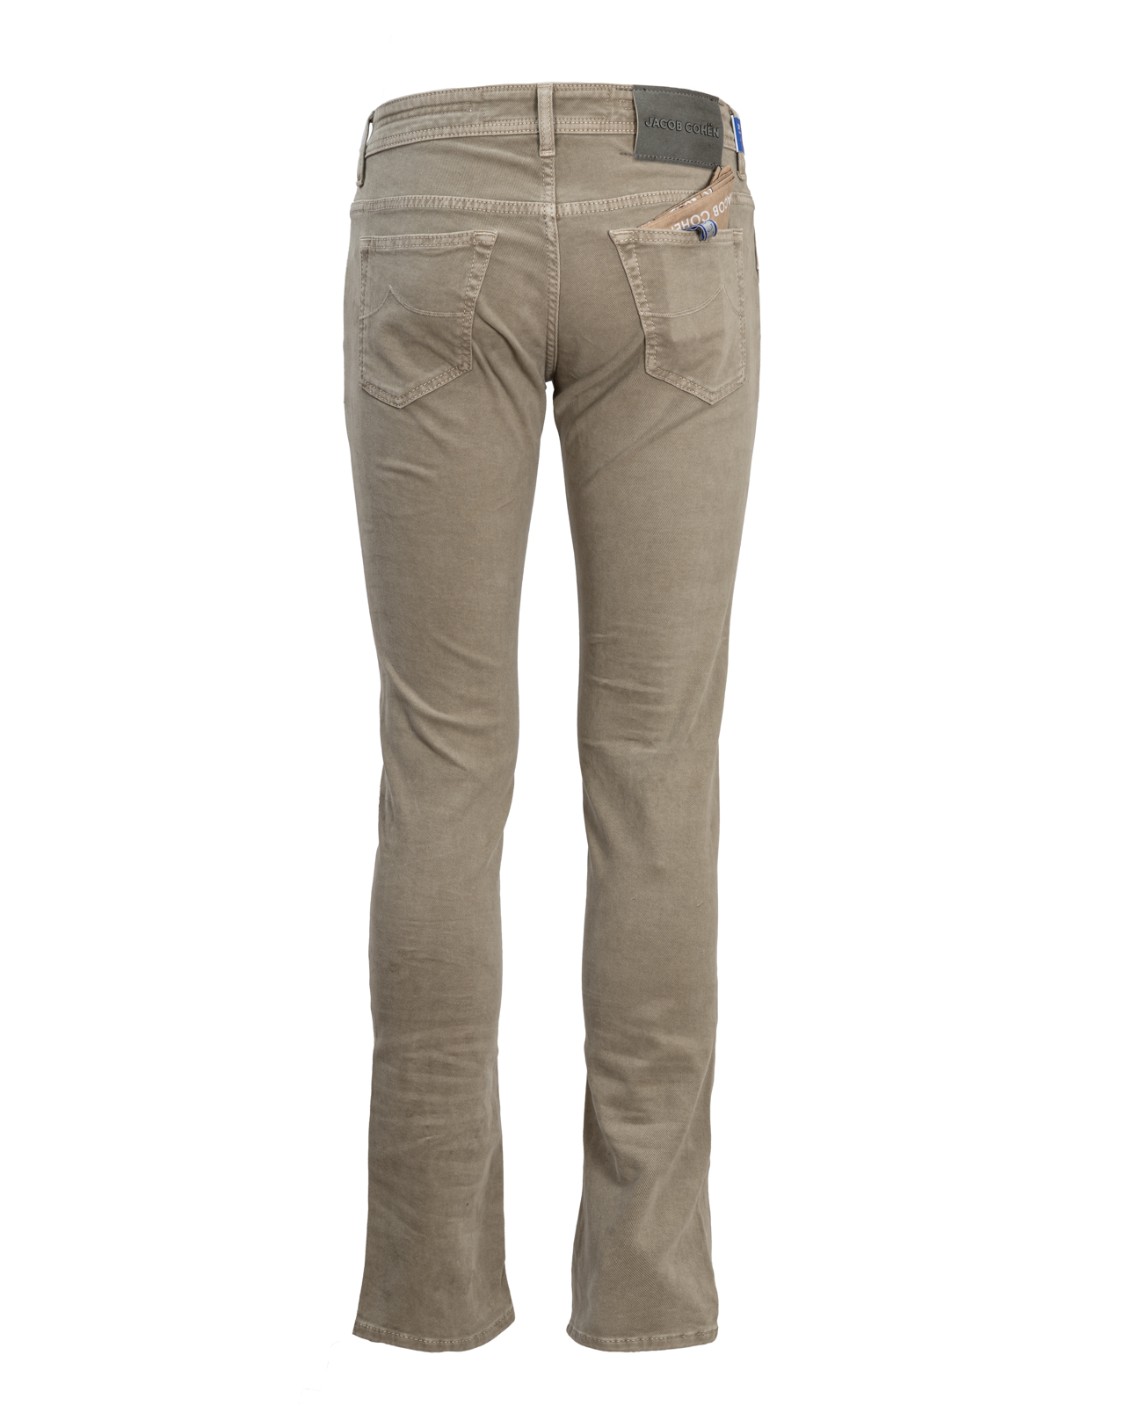 shop JACOB COHEN Saldi Jeans: Jacob Cohen pantalone in cotone elasticizzato.
Modello Leonard (ex 613) con tasca america.
Composizione: 97% cotone 3% elastan.
Made in Italy.. UQM0801 S3657-D37 number 5317096